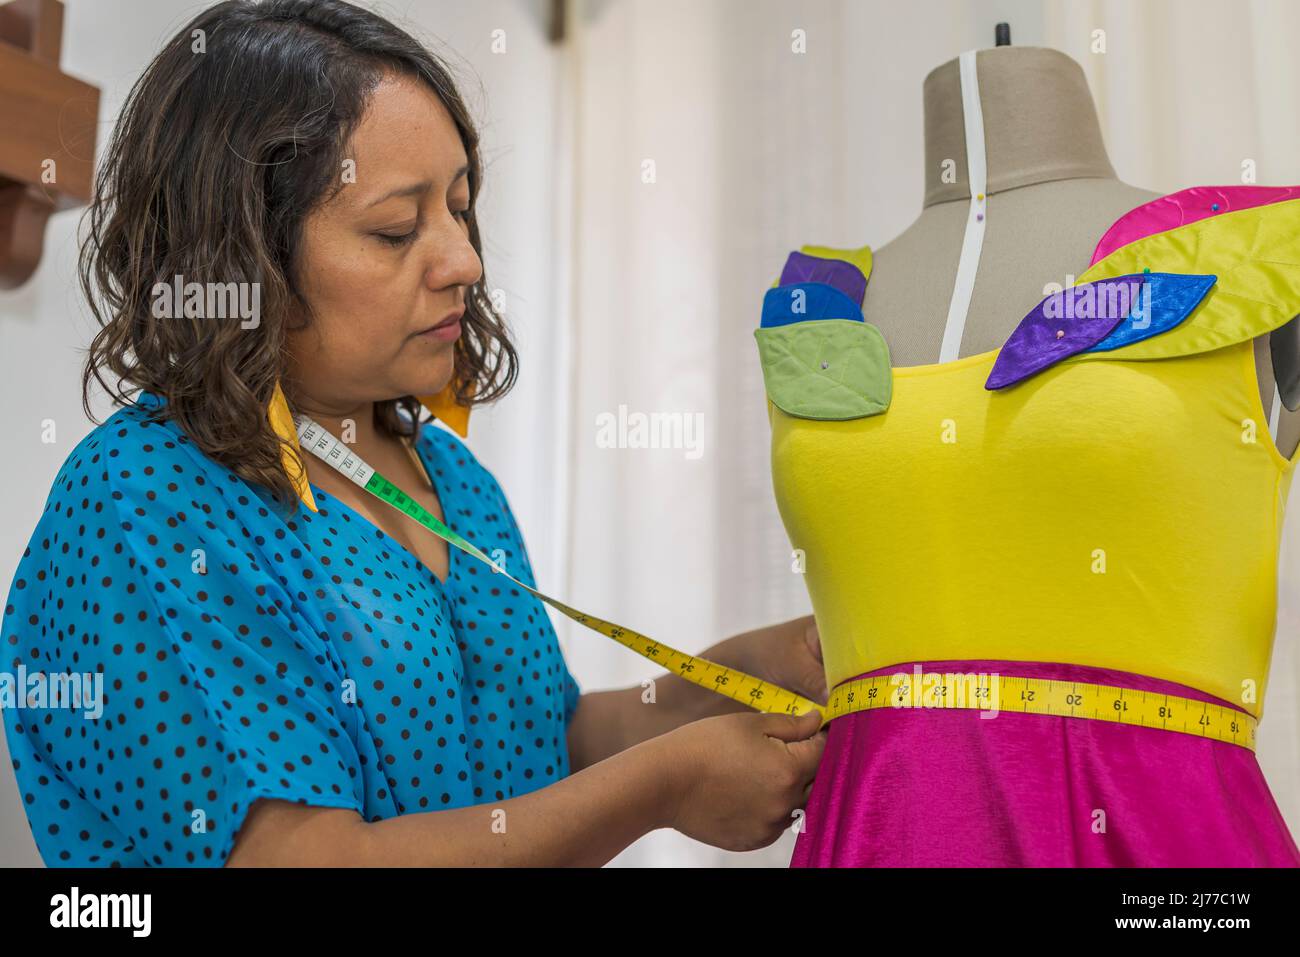 Lateinischer Modedesigner, der ein Kleid mit einem Klebeband auf einer Schaufensterpuppe misst Stockfoto